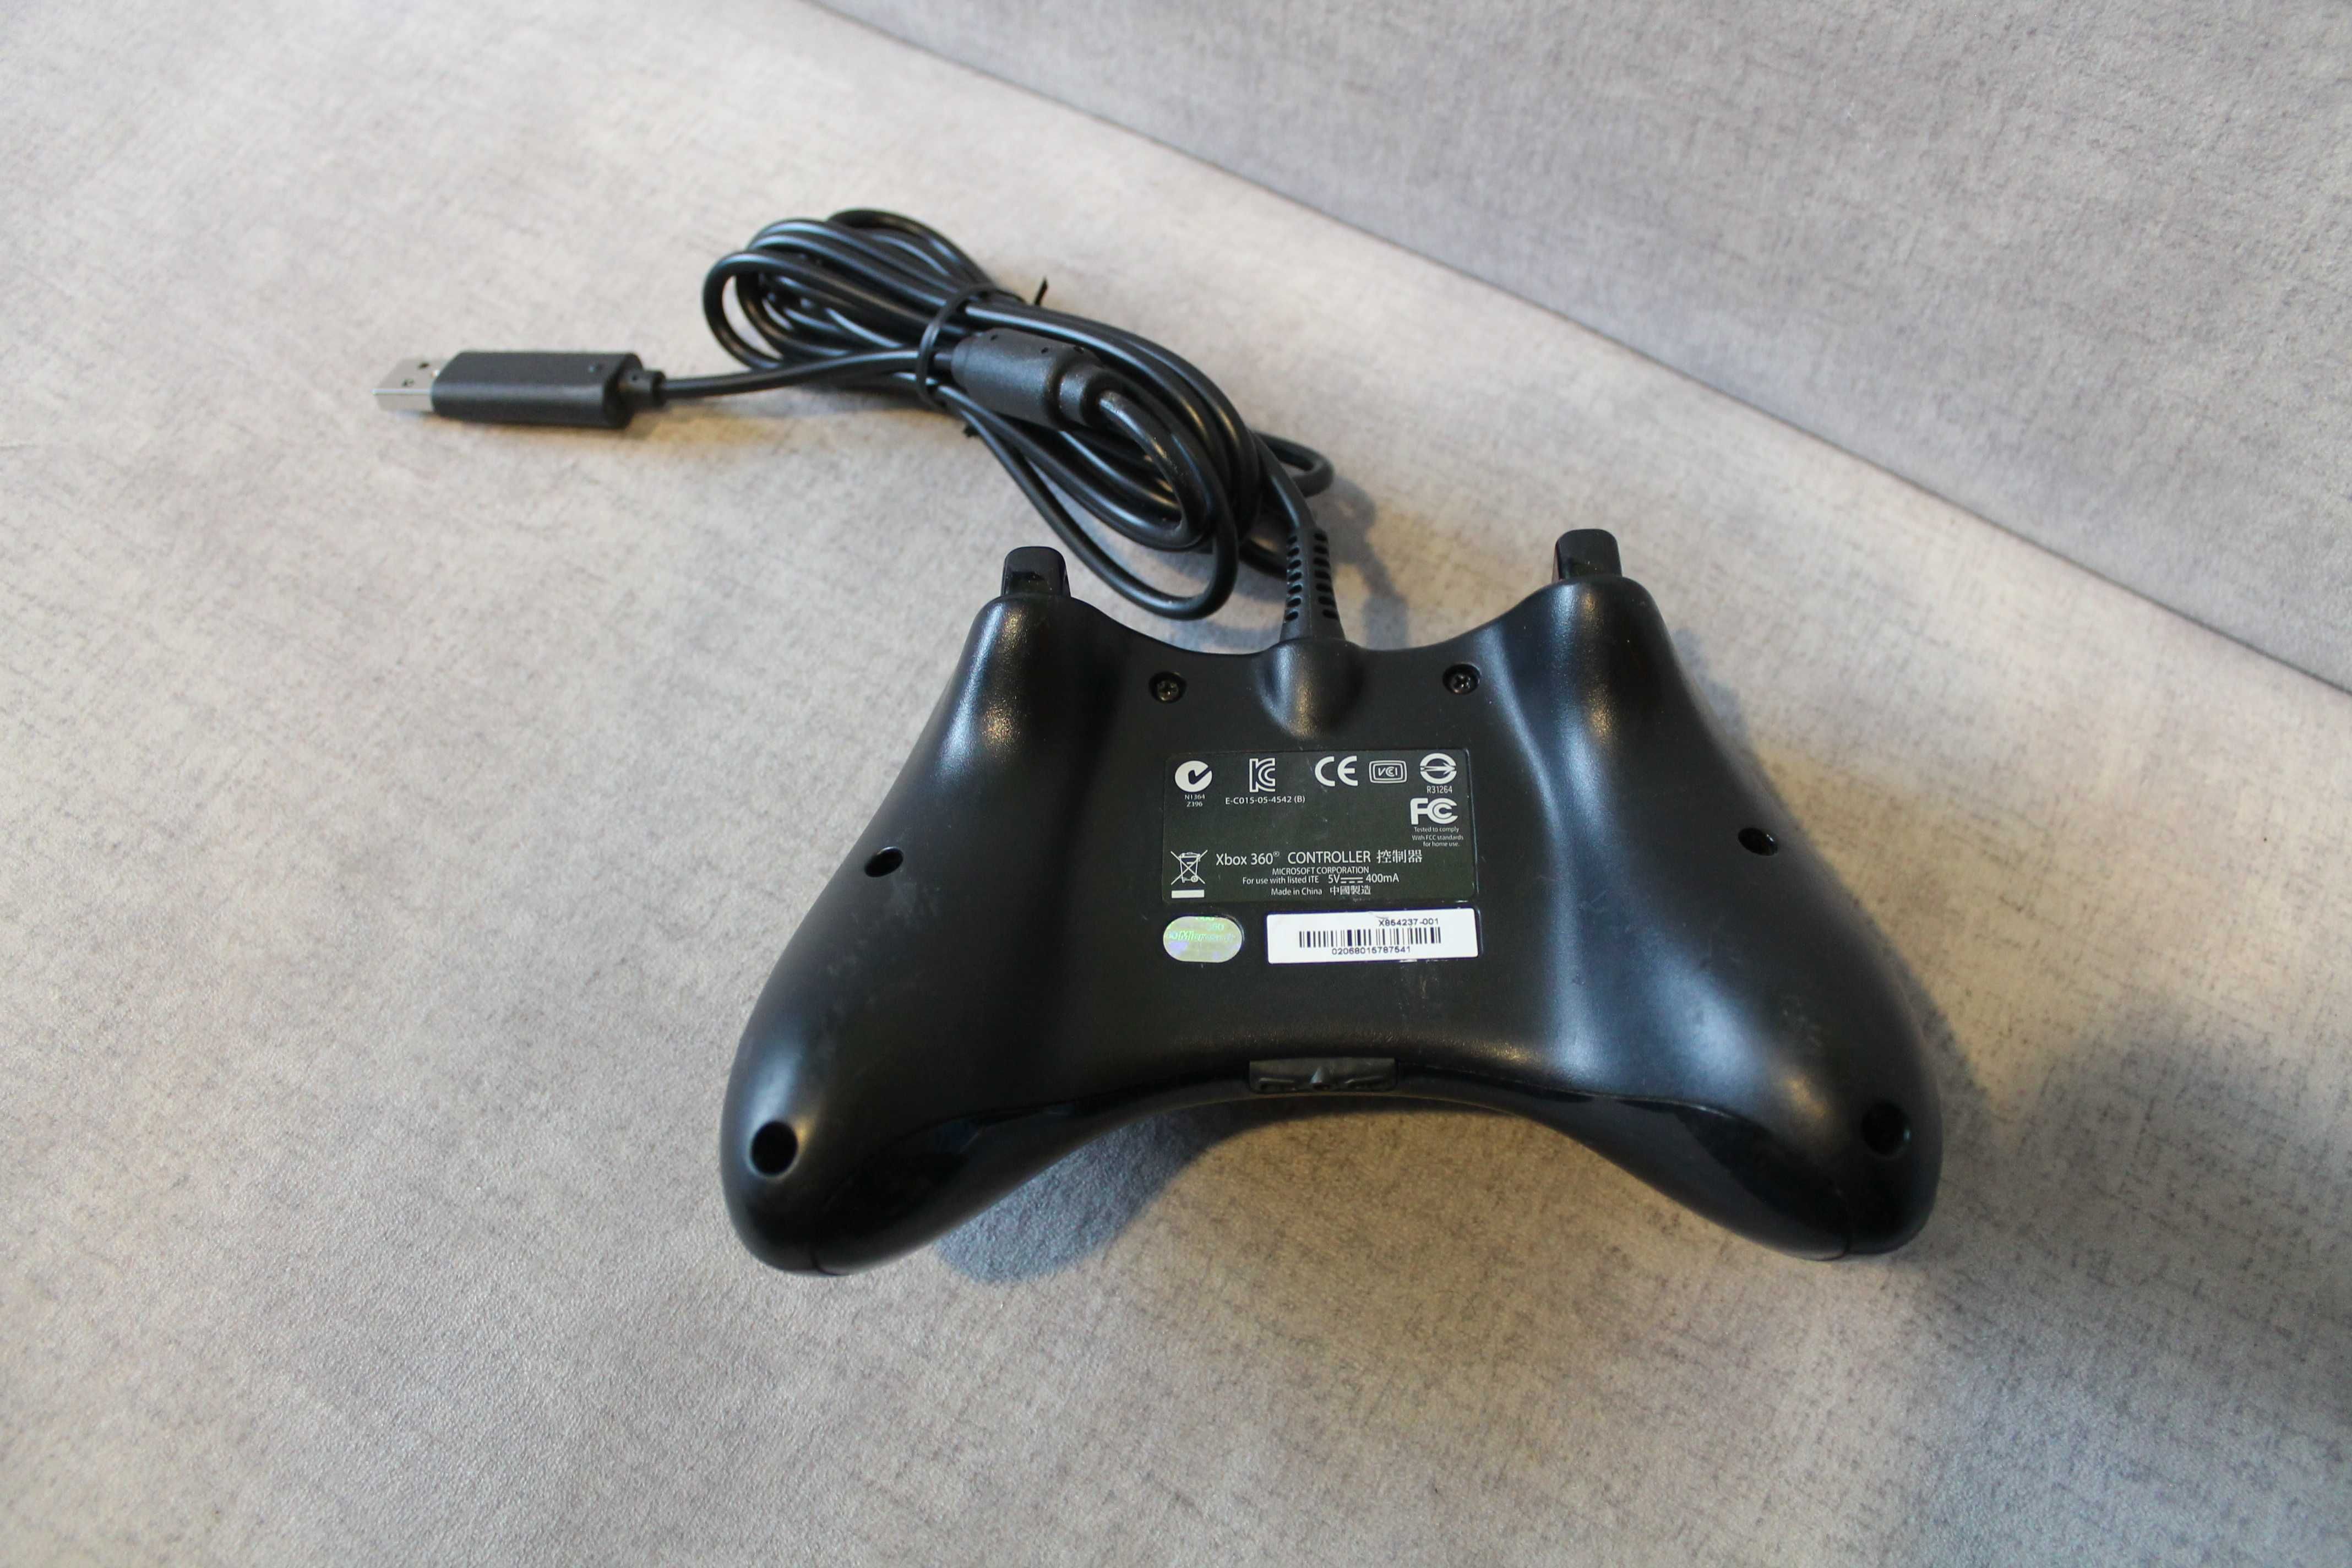 Pad przewodowy do konsoli Microsoft Xbox 360 czarny